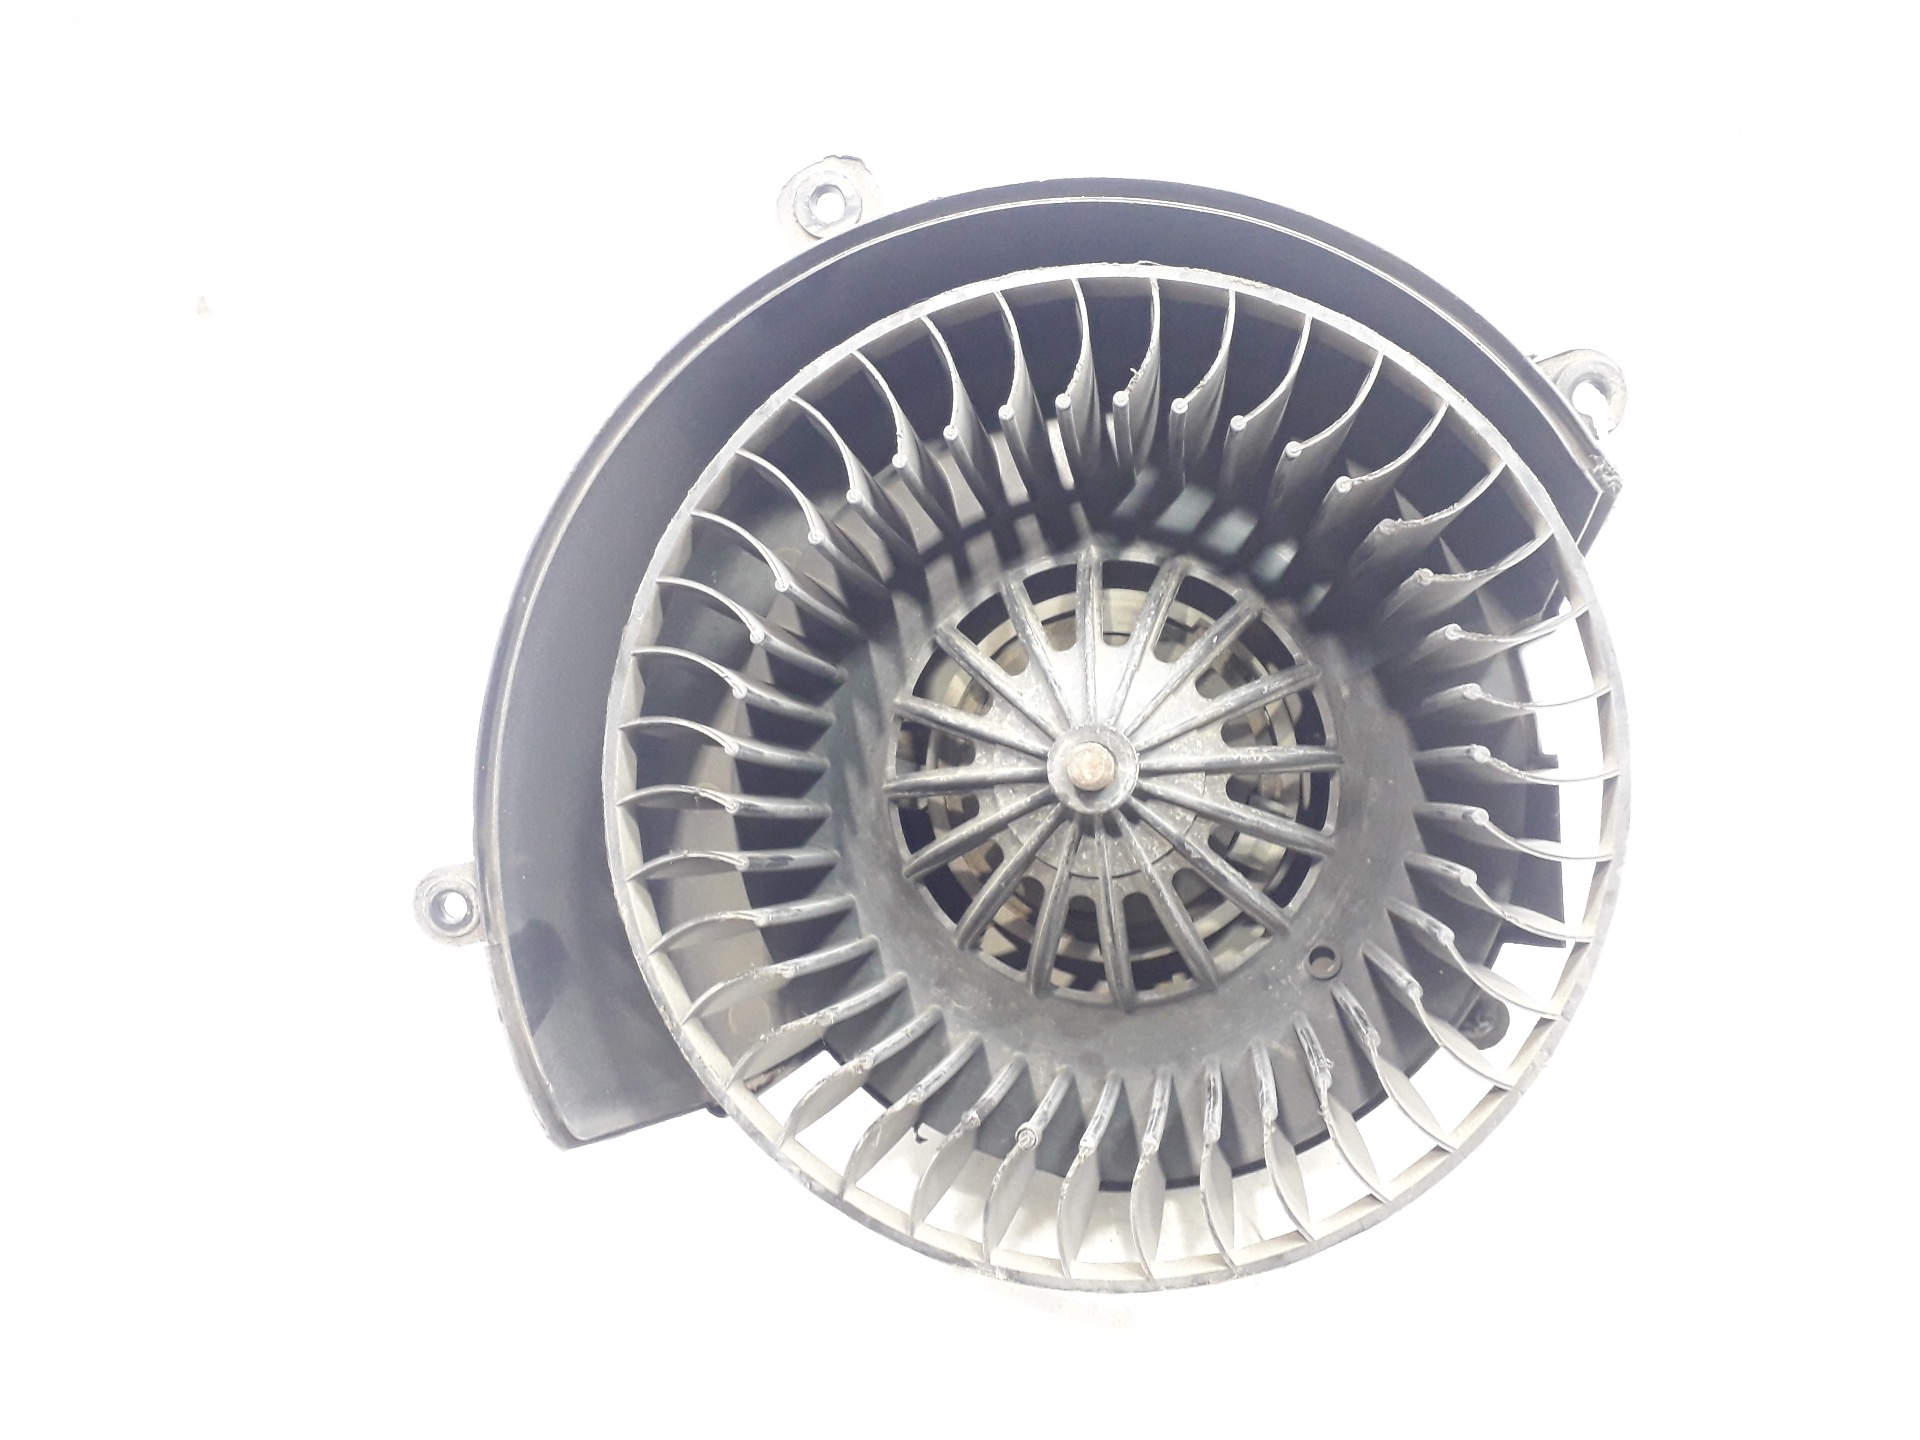 OPEL Corsa B (1993-2000) Heater Blower Fan 90437893 18793739